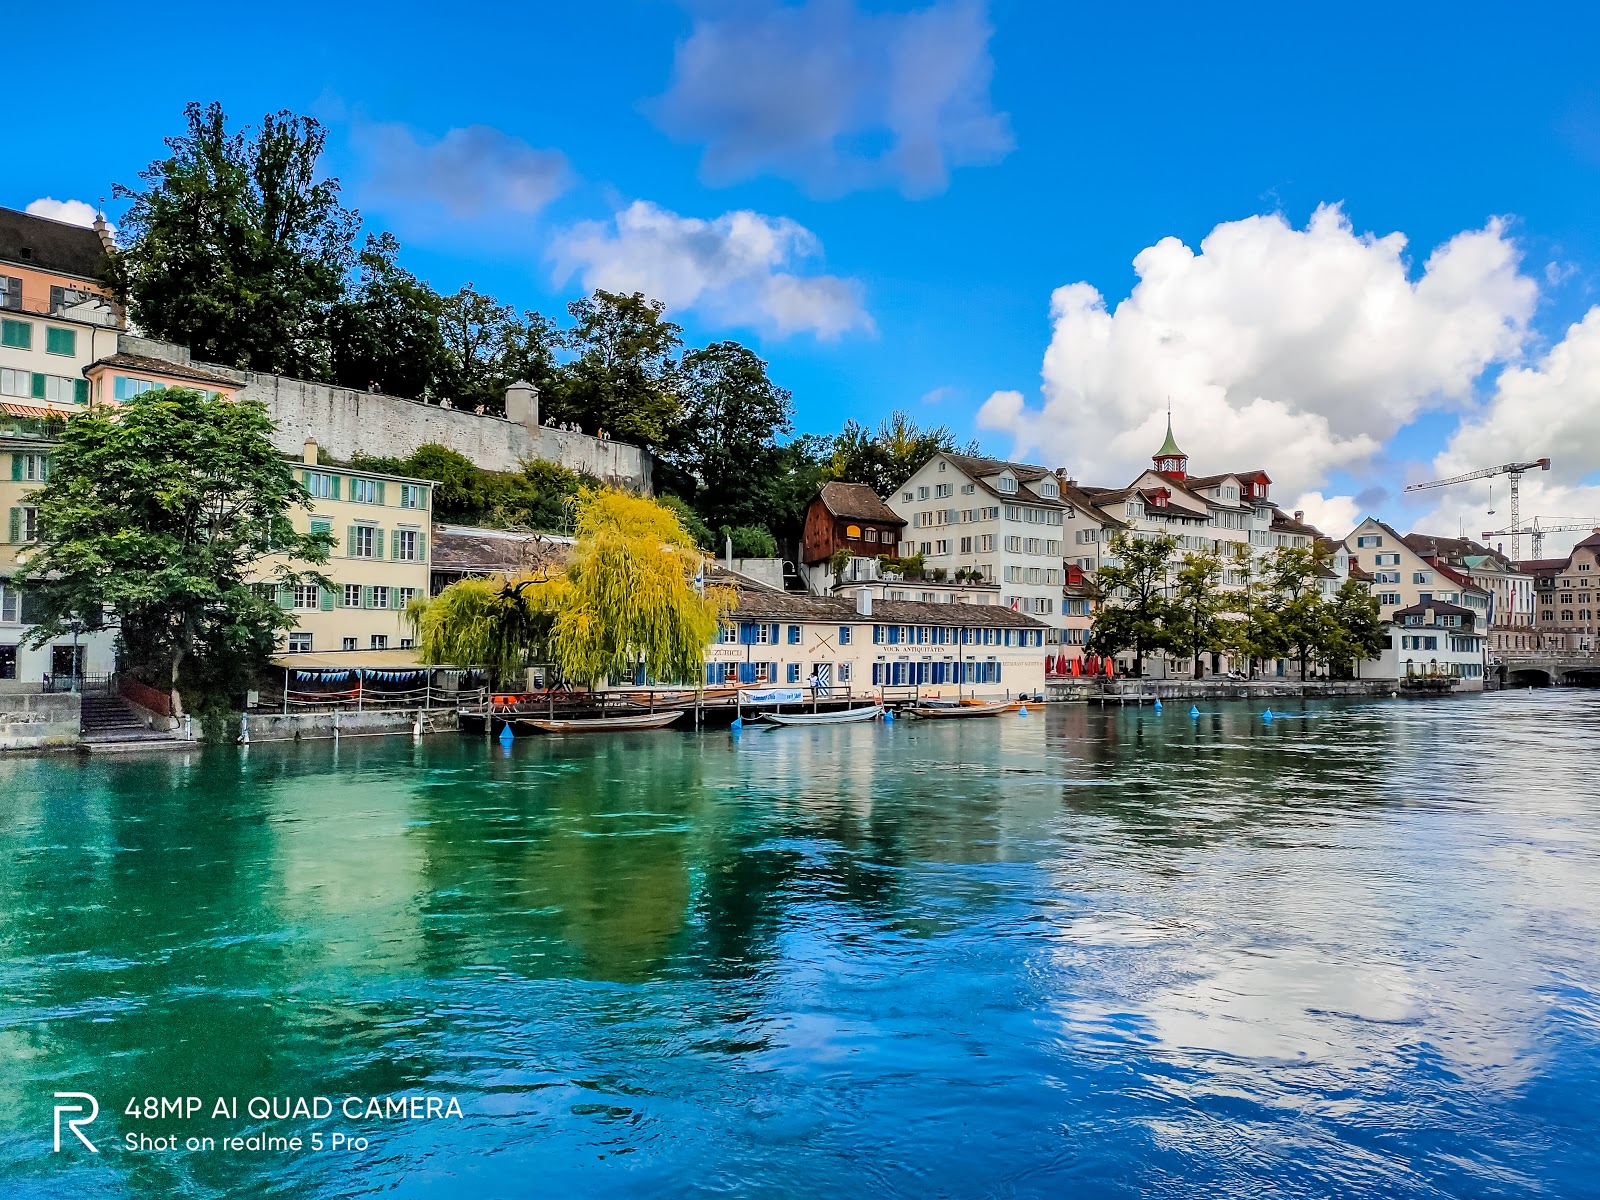 Trải nghiệm 1 ngày thơ mộng bên bờ Limmat, Zurich - thành phố đẹp ...